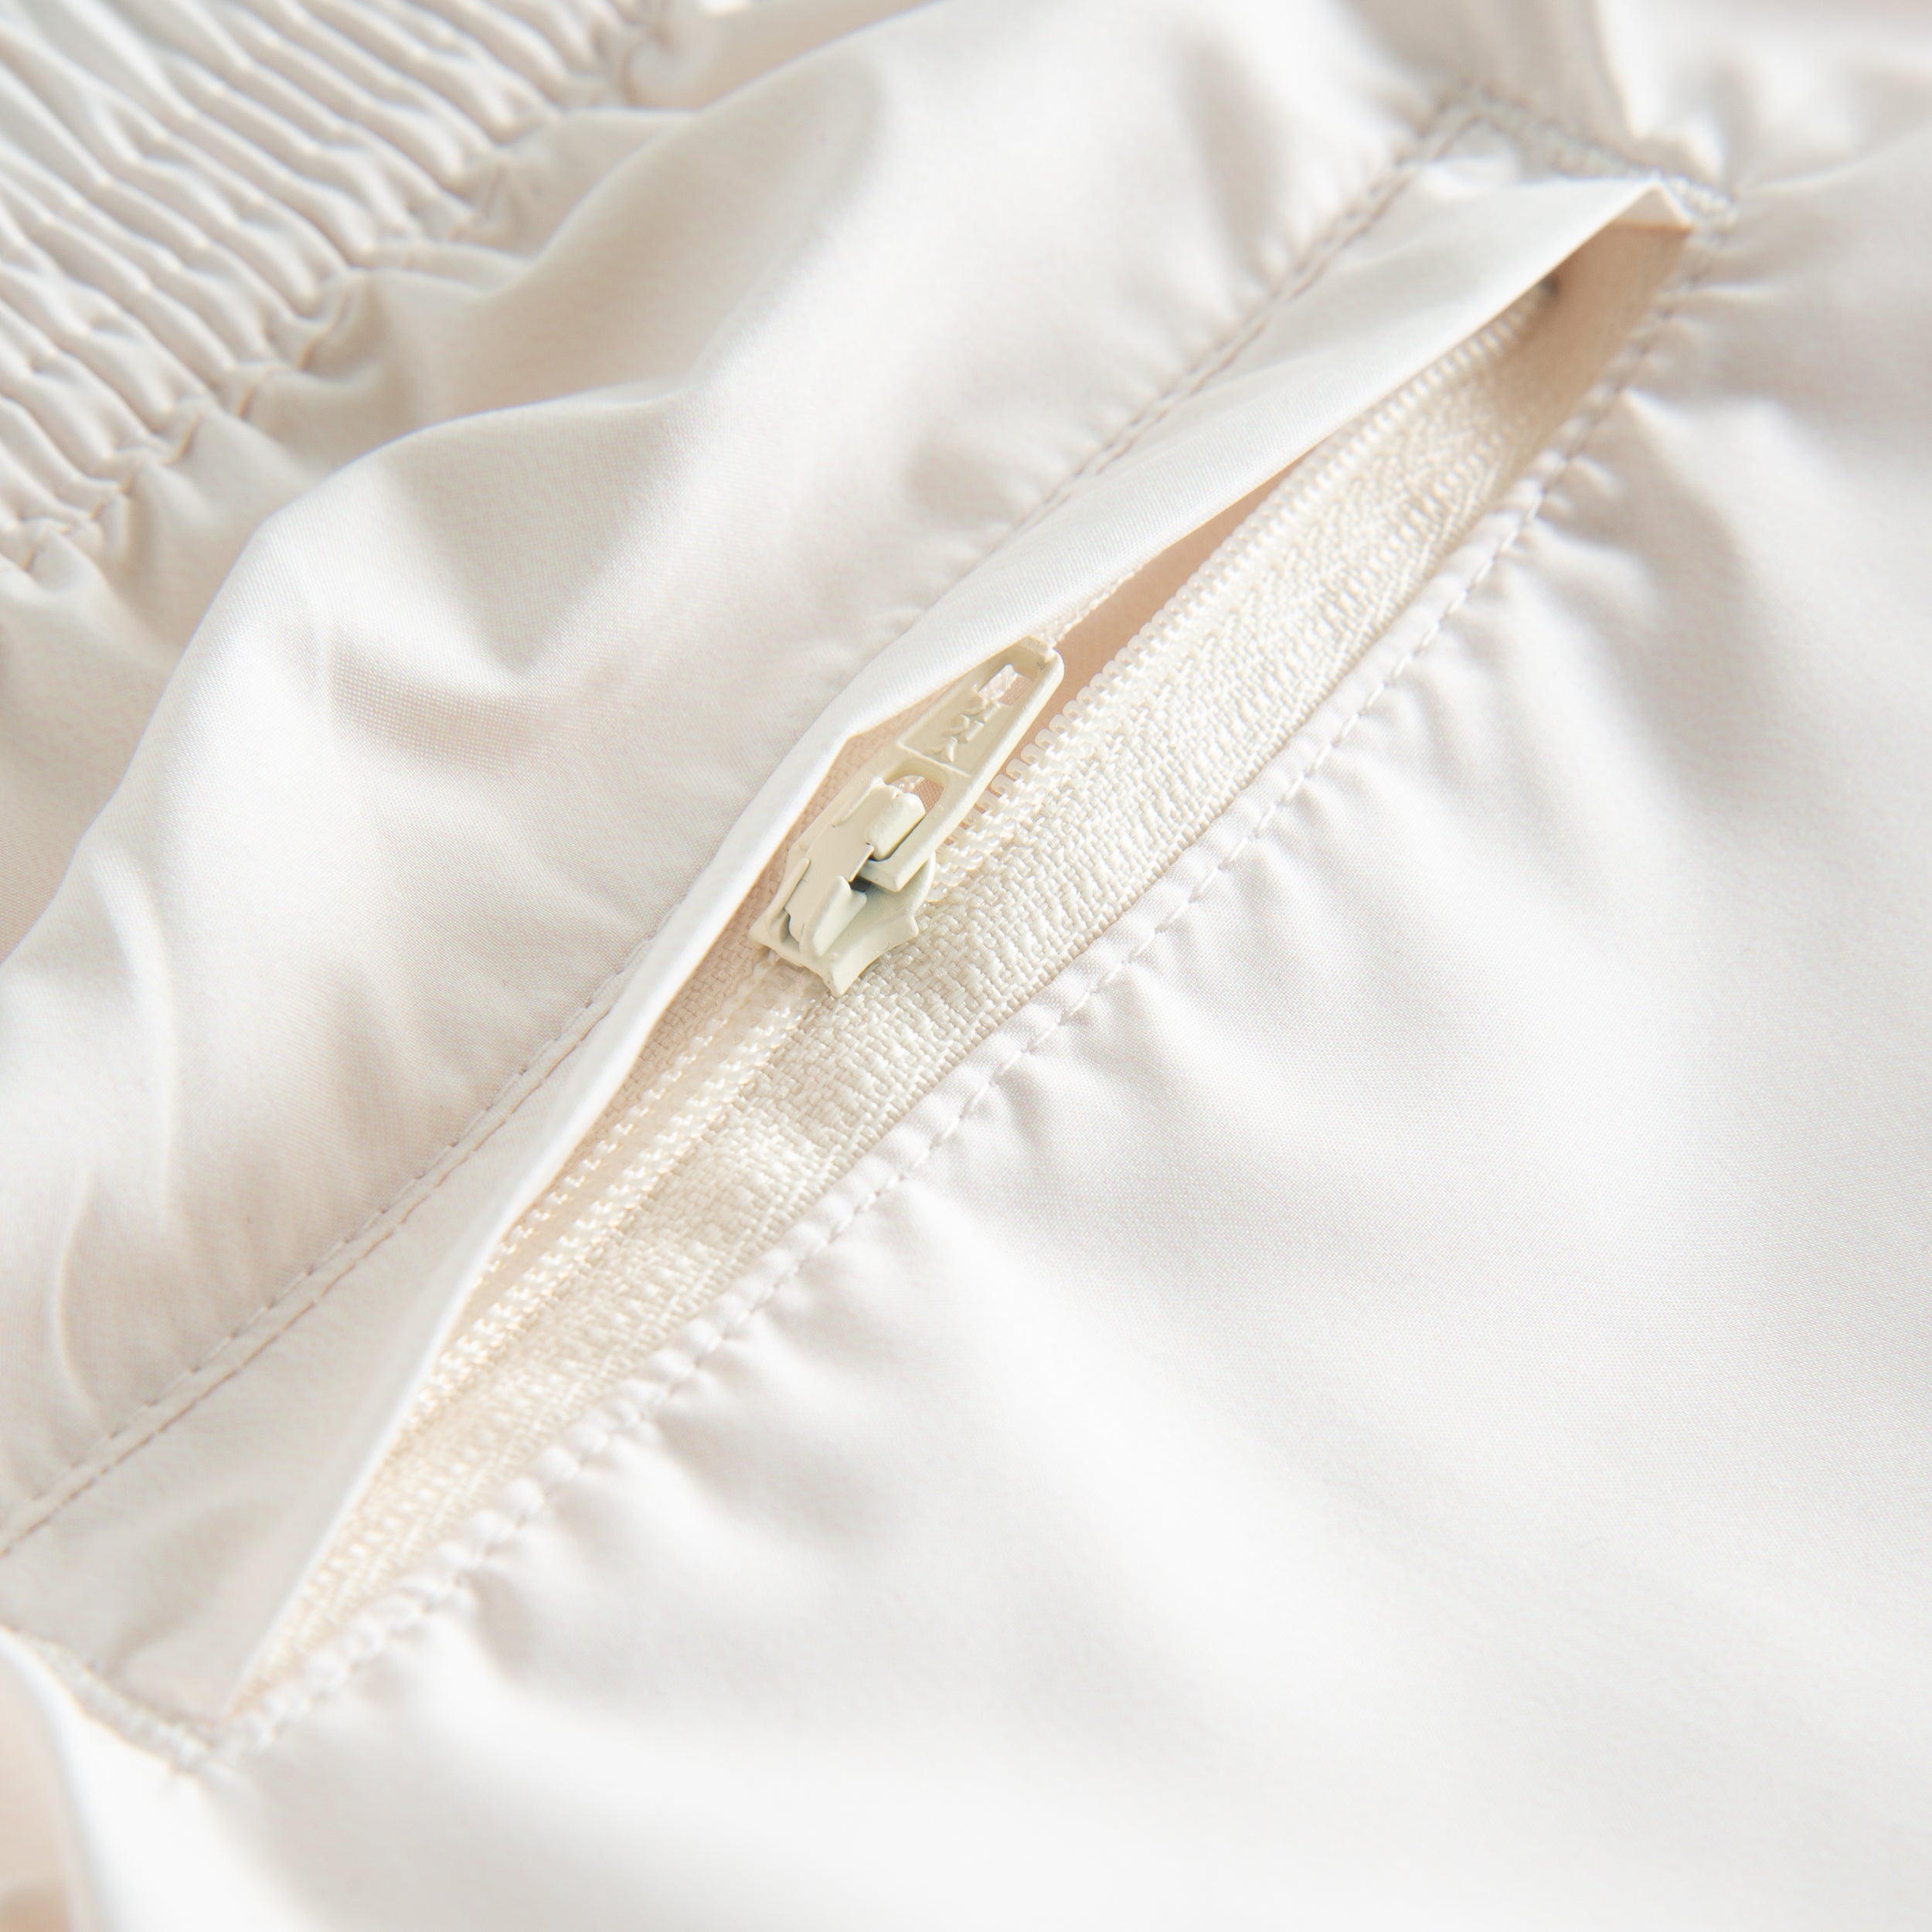 Back zipper pocket on cream white swimtrunks